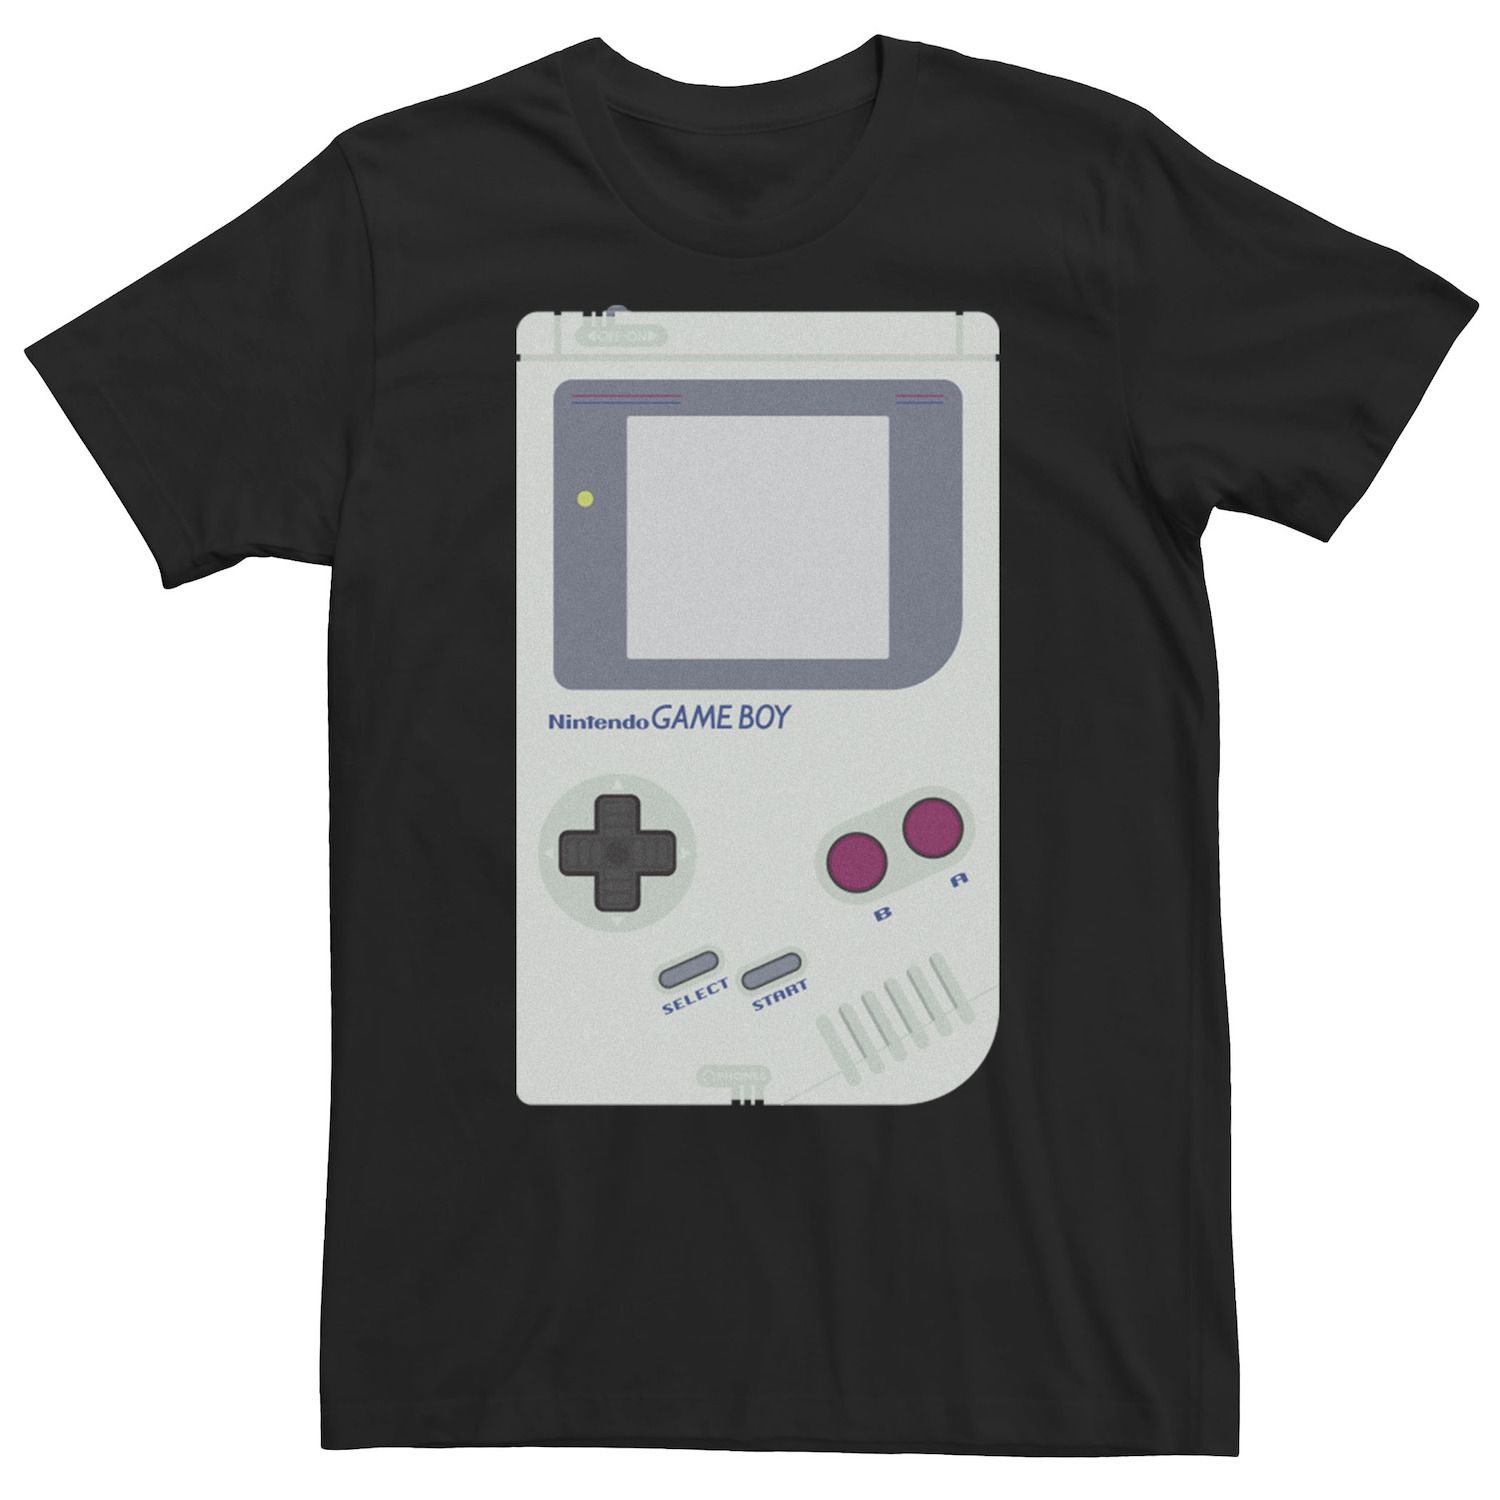 Мужская футболка для портативной консоли Nintendo Game Boy, Black Licensed Character, черный аксессуар для портативной консоли nintendo game